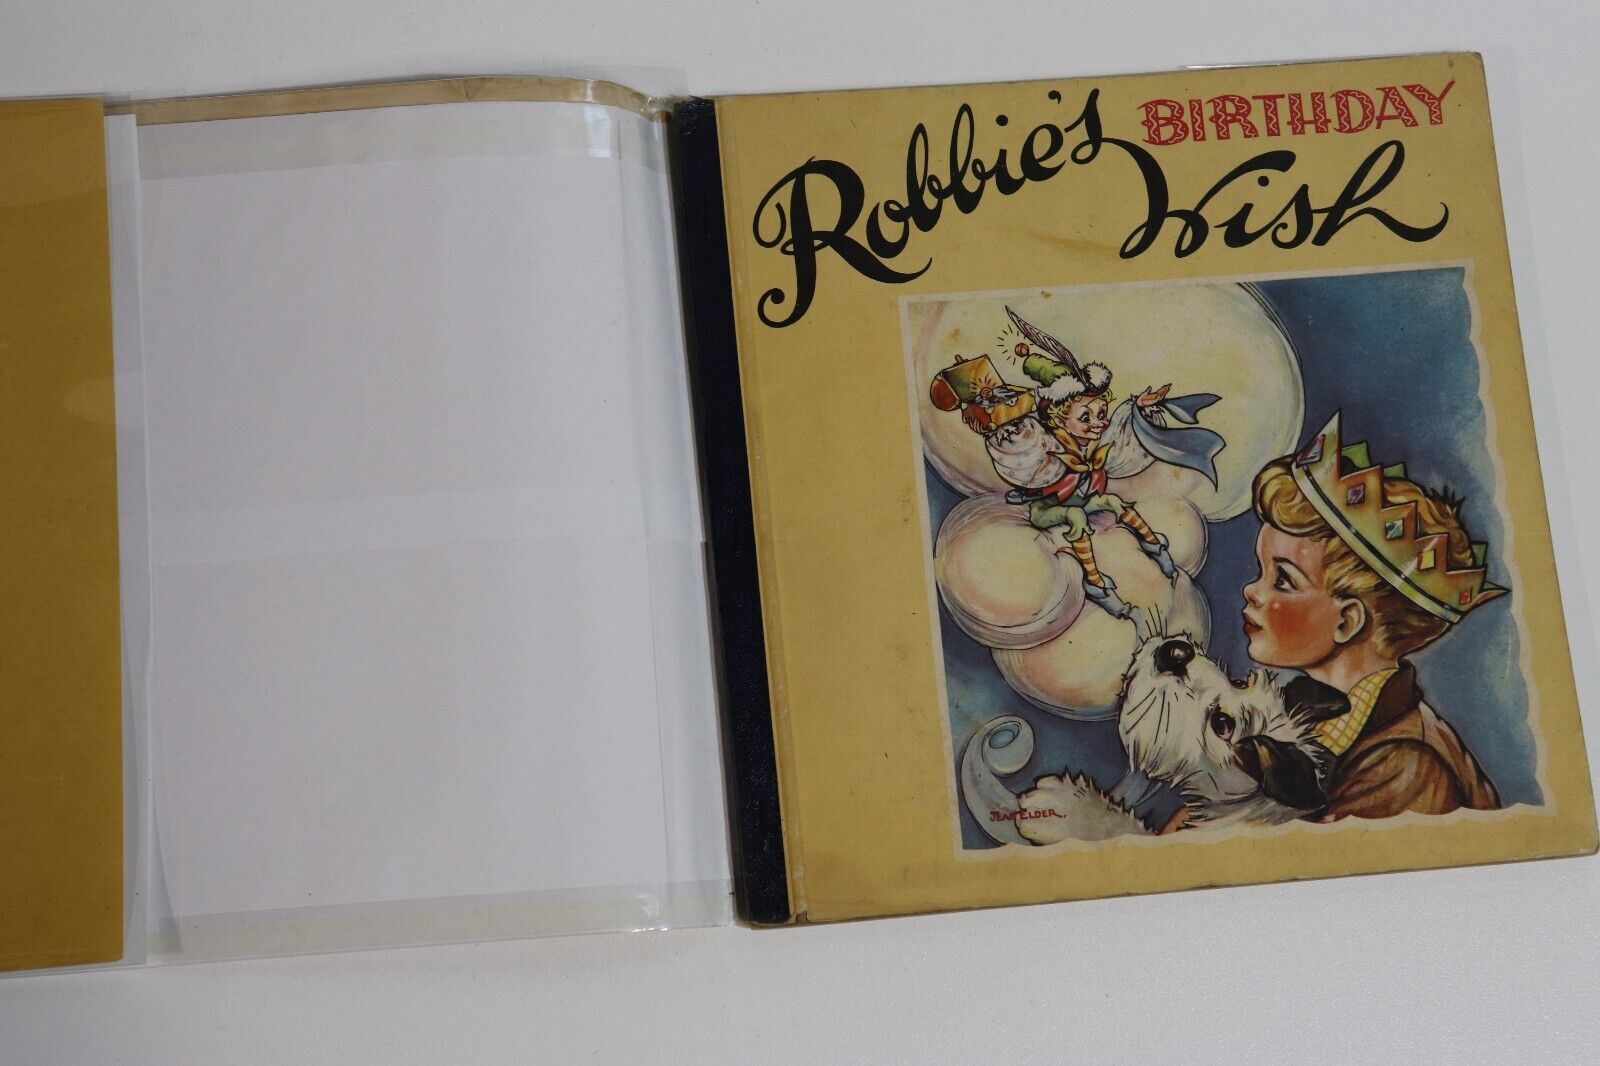 Robbie's Birthday Wish by Phyllis Johnson - c1950 - Vintage Children's Book - 0